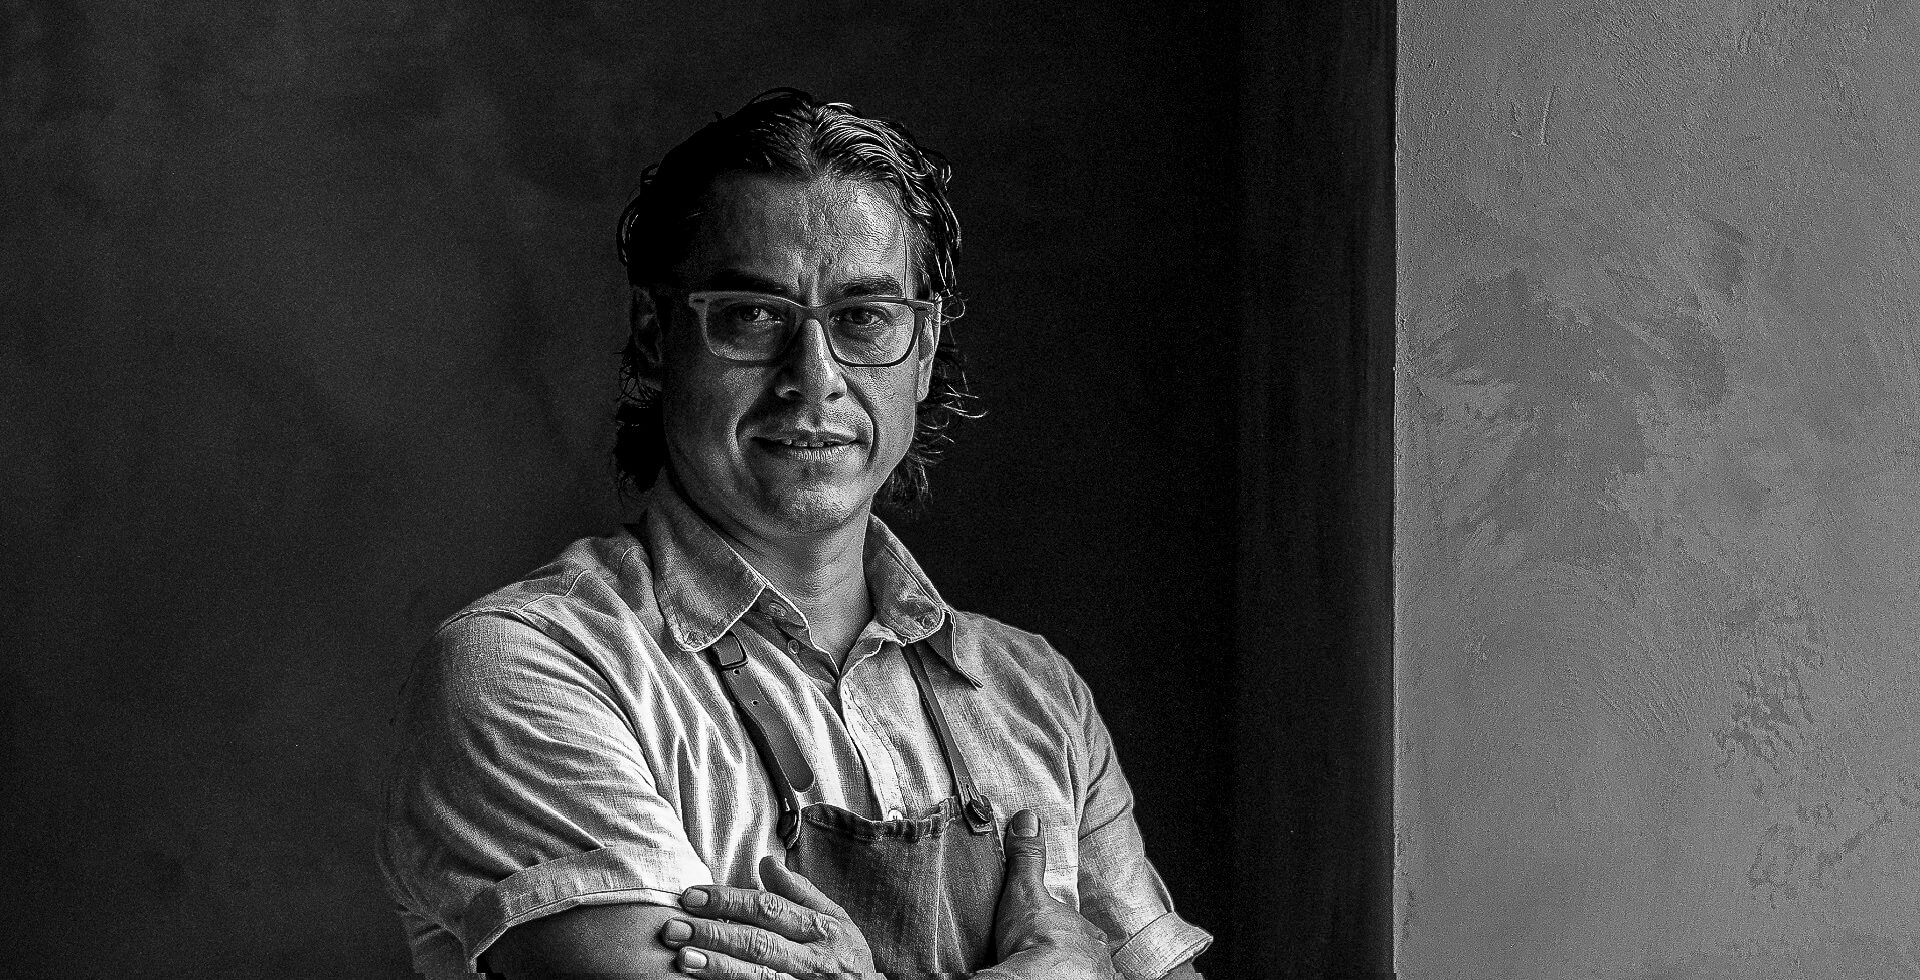 Mexican star chef Carlos Gaytán